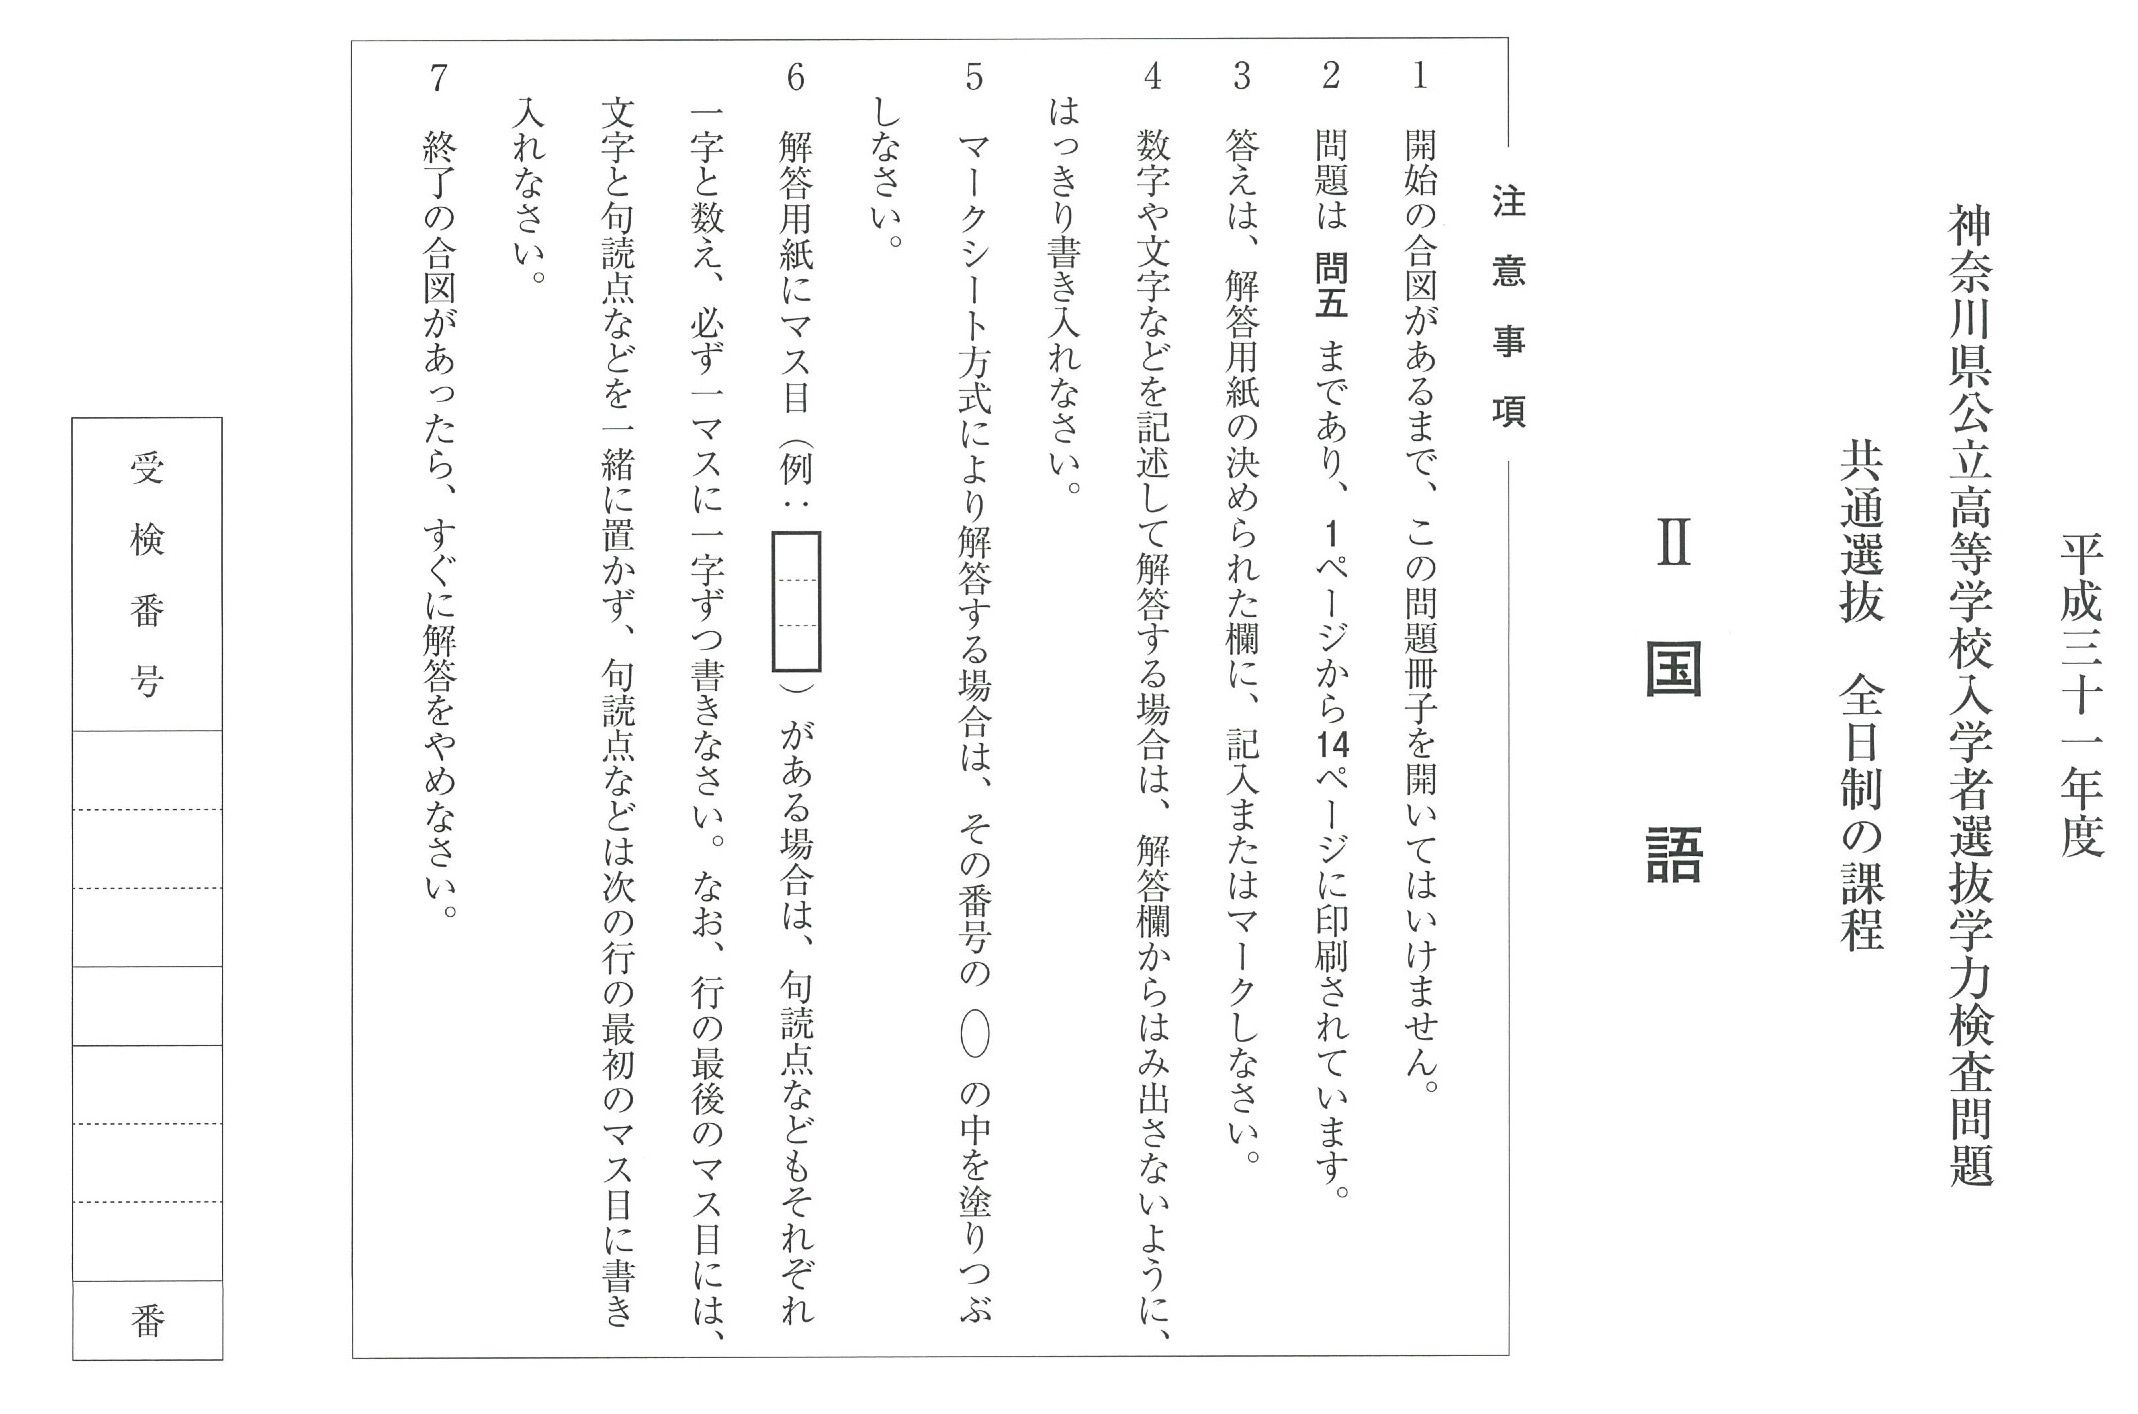 神奈川県公立高校入試問題分析と感想2019 炎の国語編 第二の家